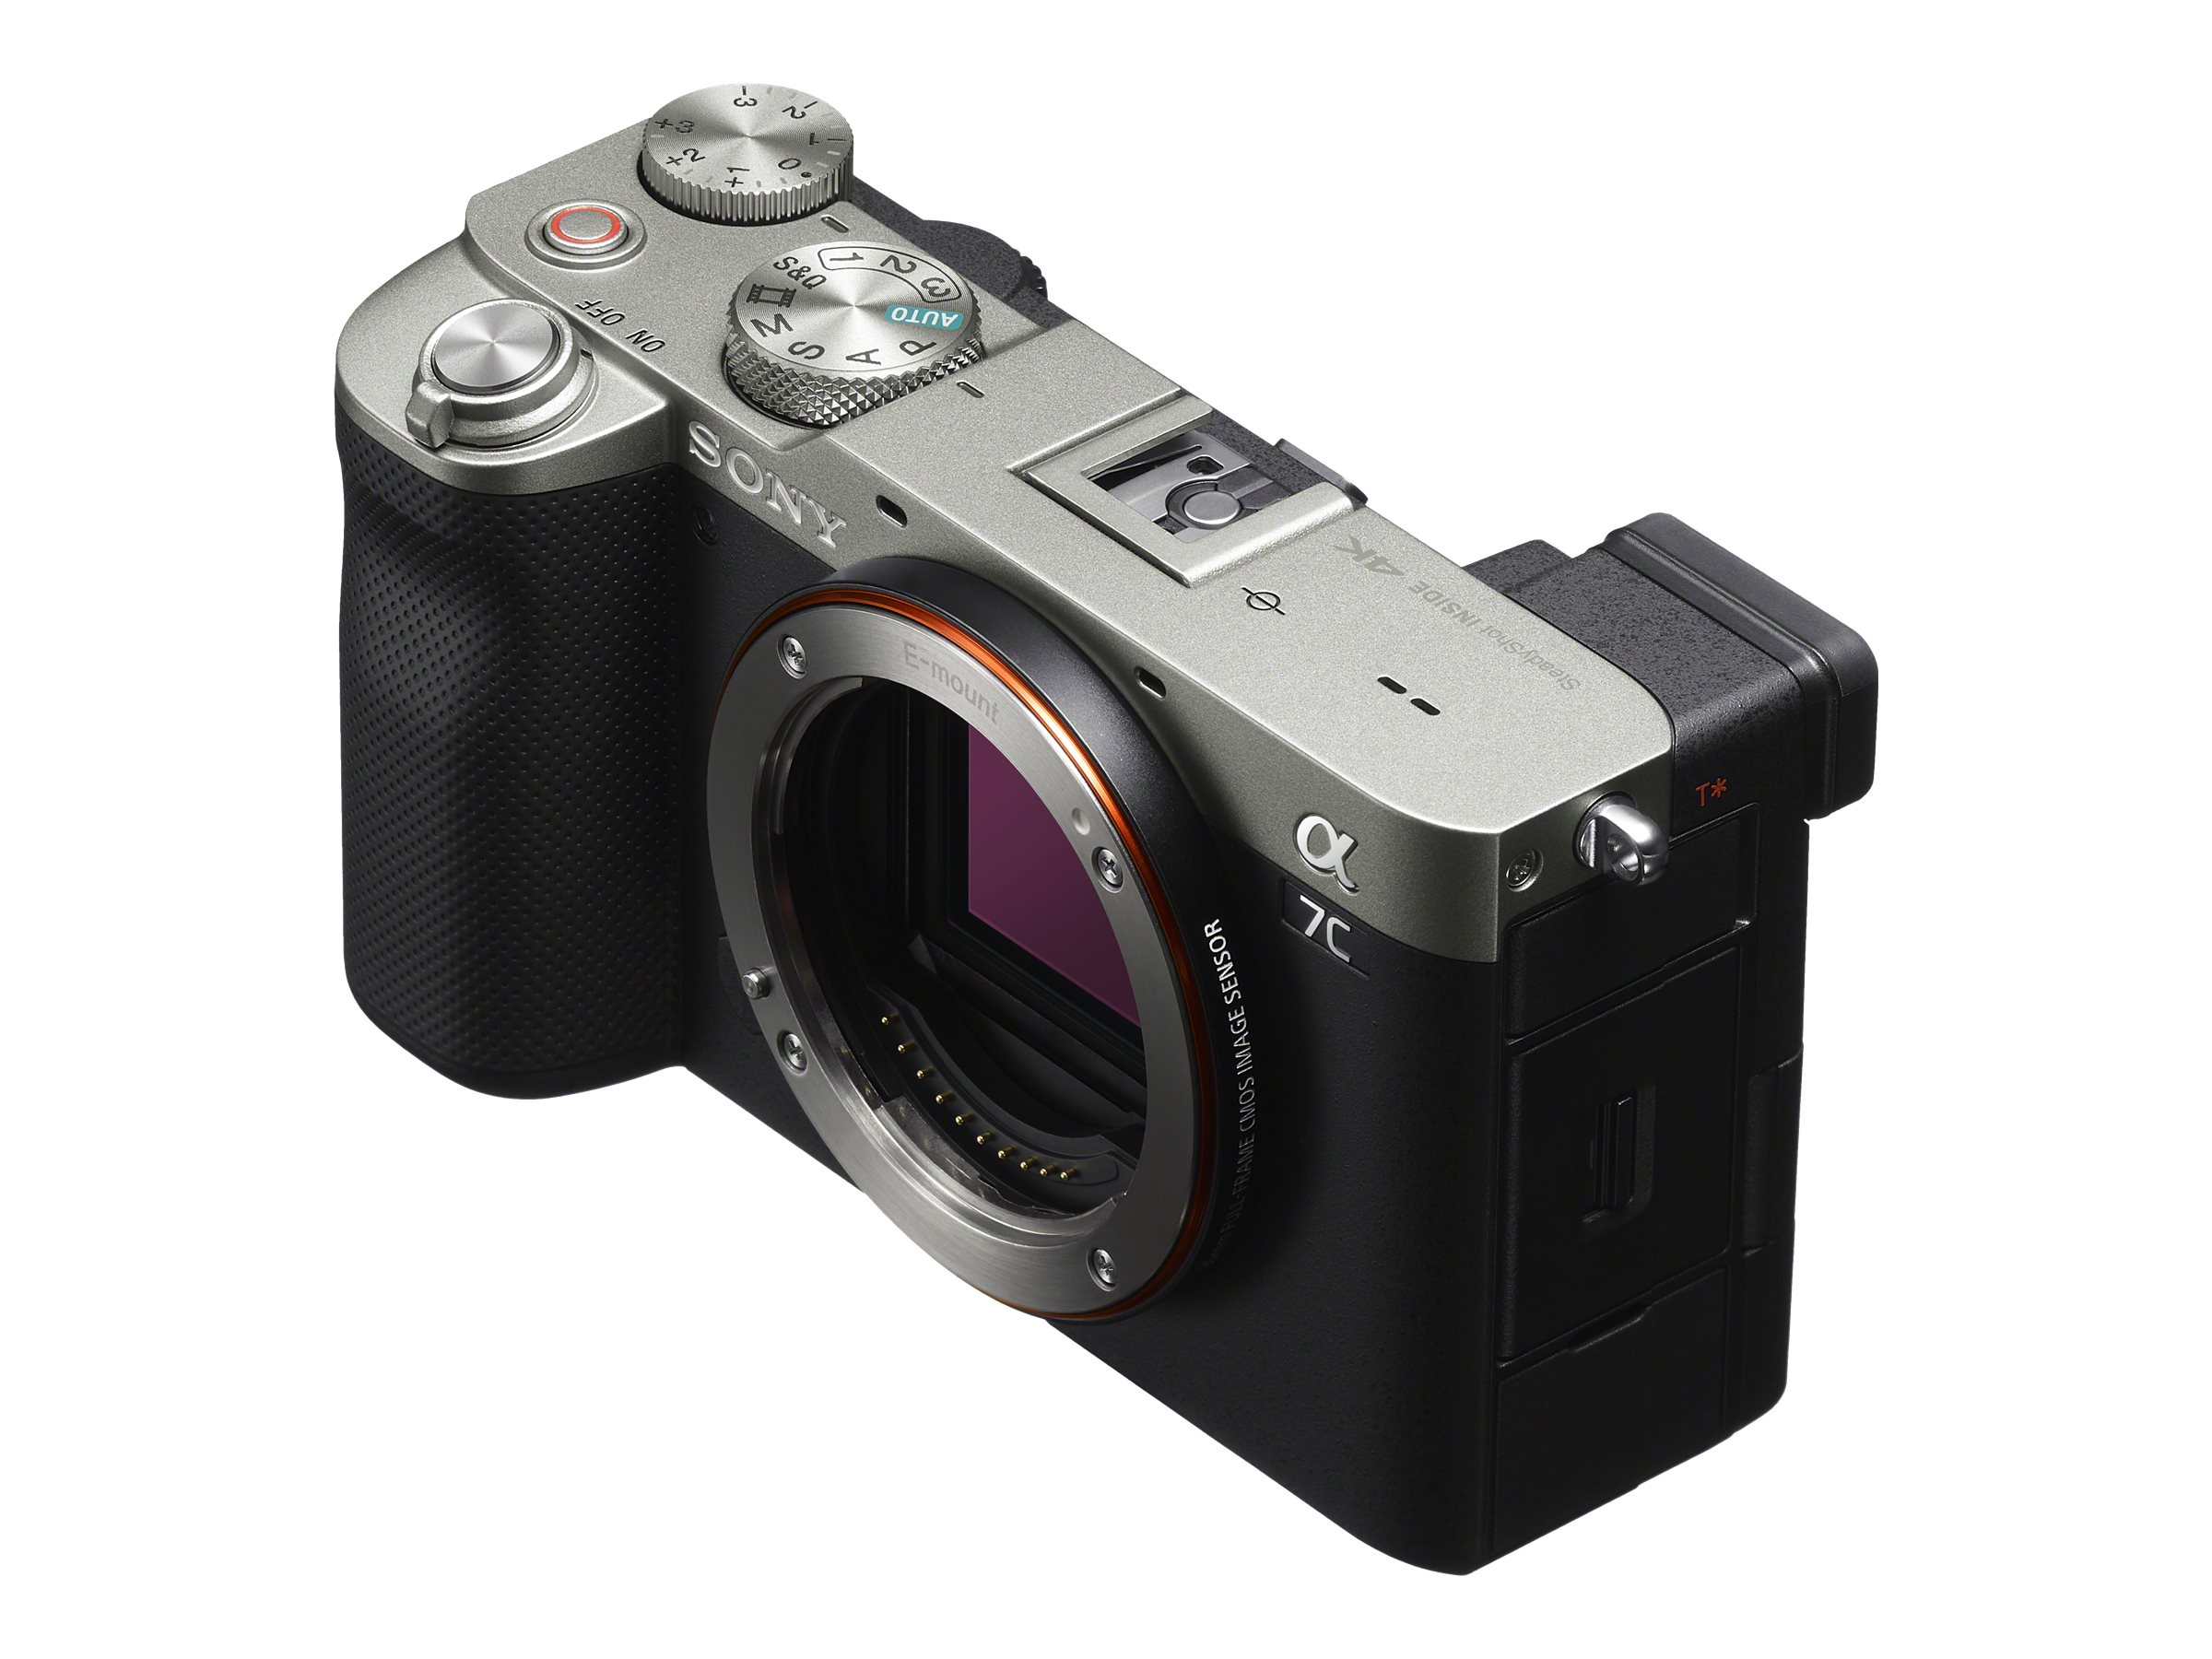 Sony Alpha 7 IV Full-frame Mirrorless Interchangeable Lens Camera + Sony -  FE 24-105mm F4 G OSS Standard Zoom Lens (SEL24105G/2)